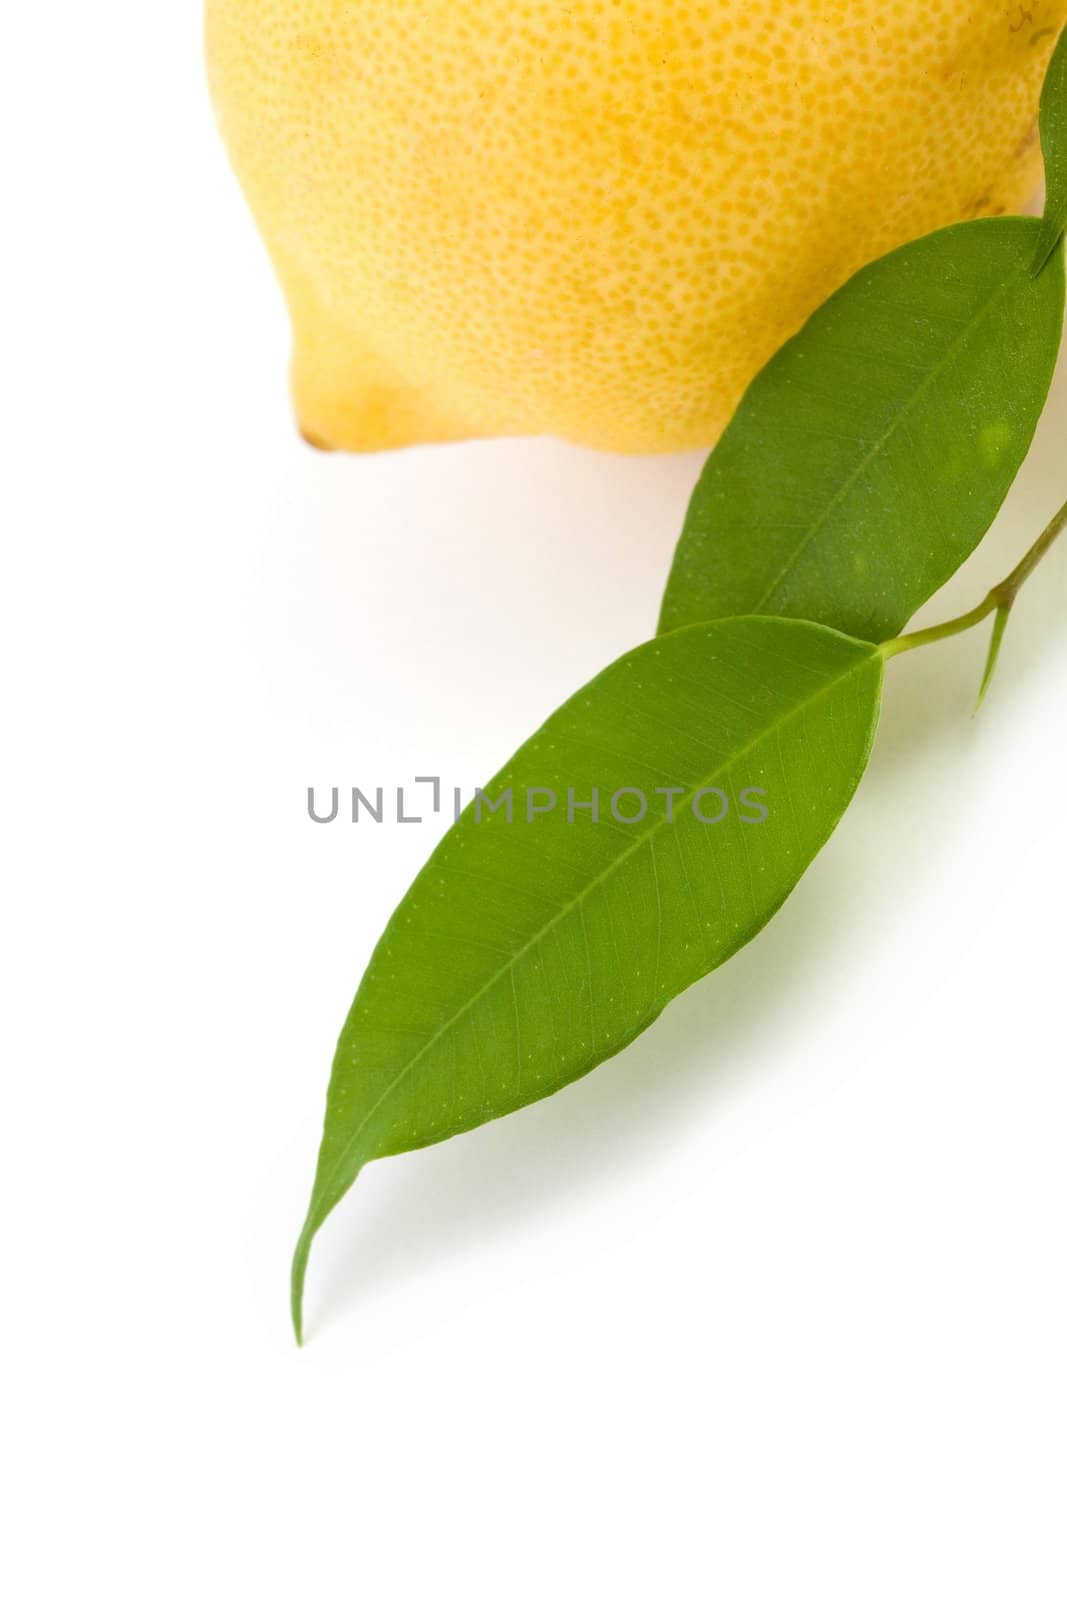 Lemon by velkol